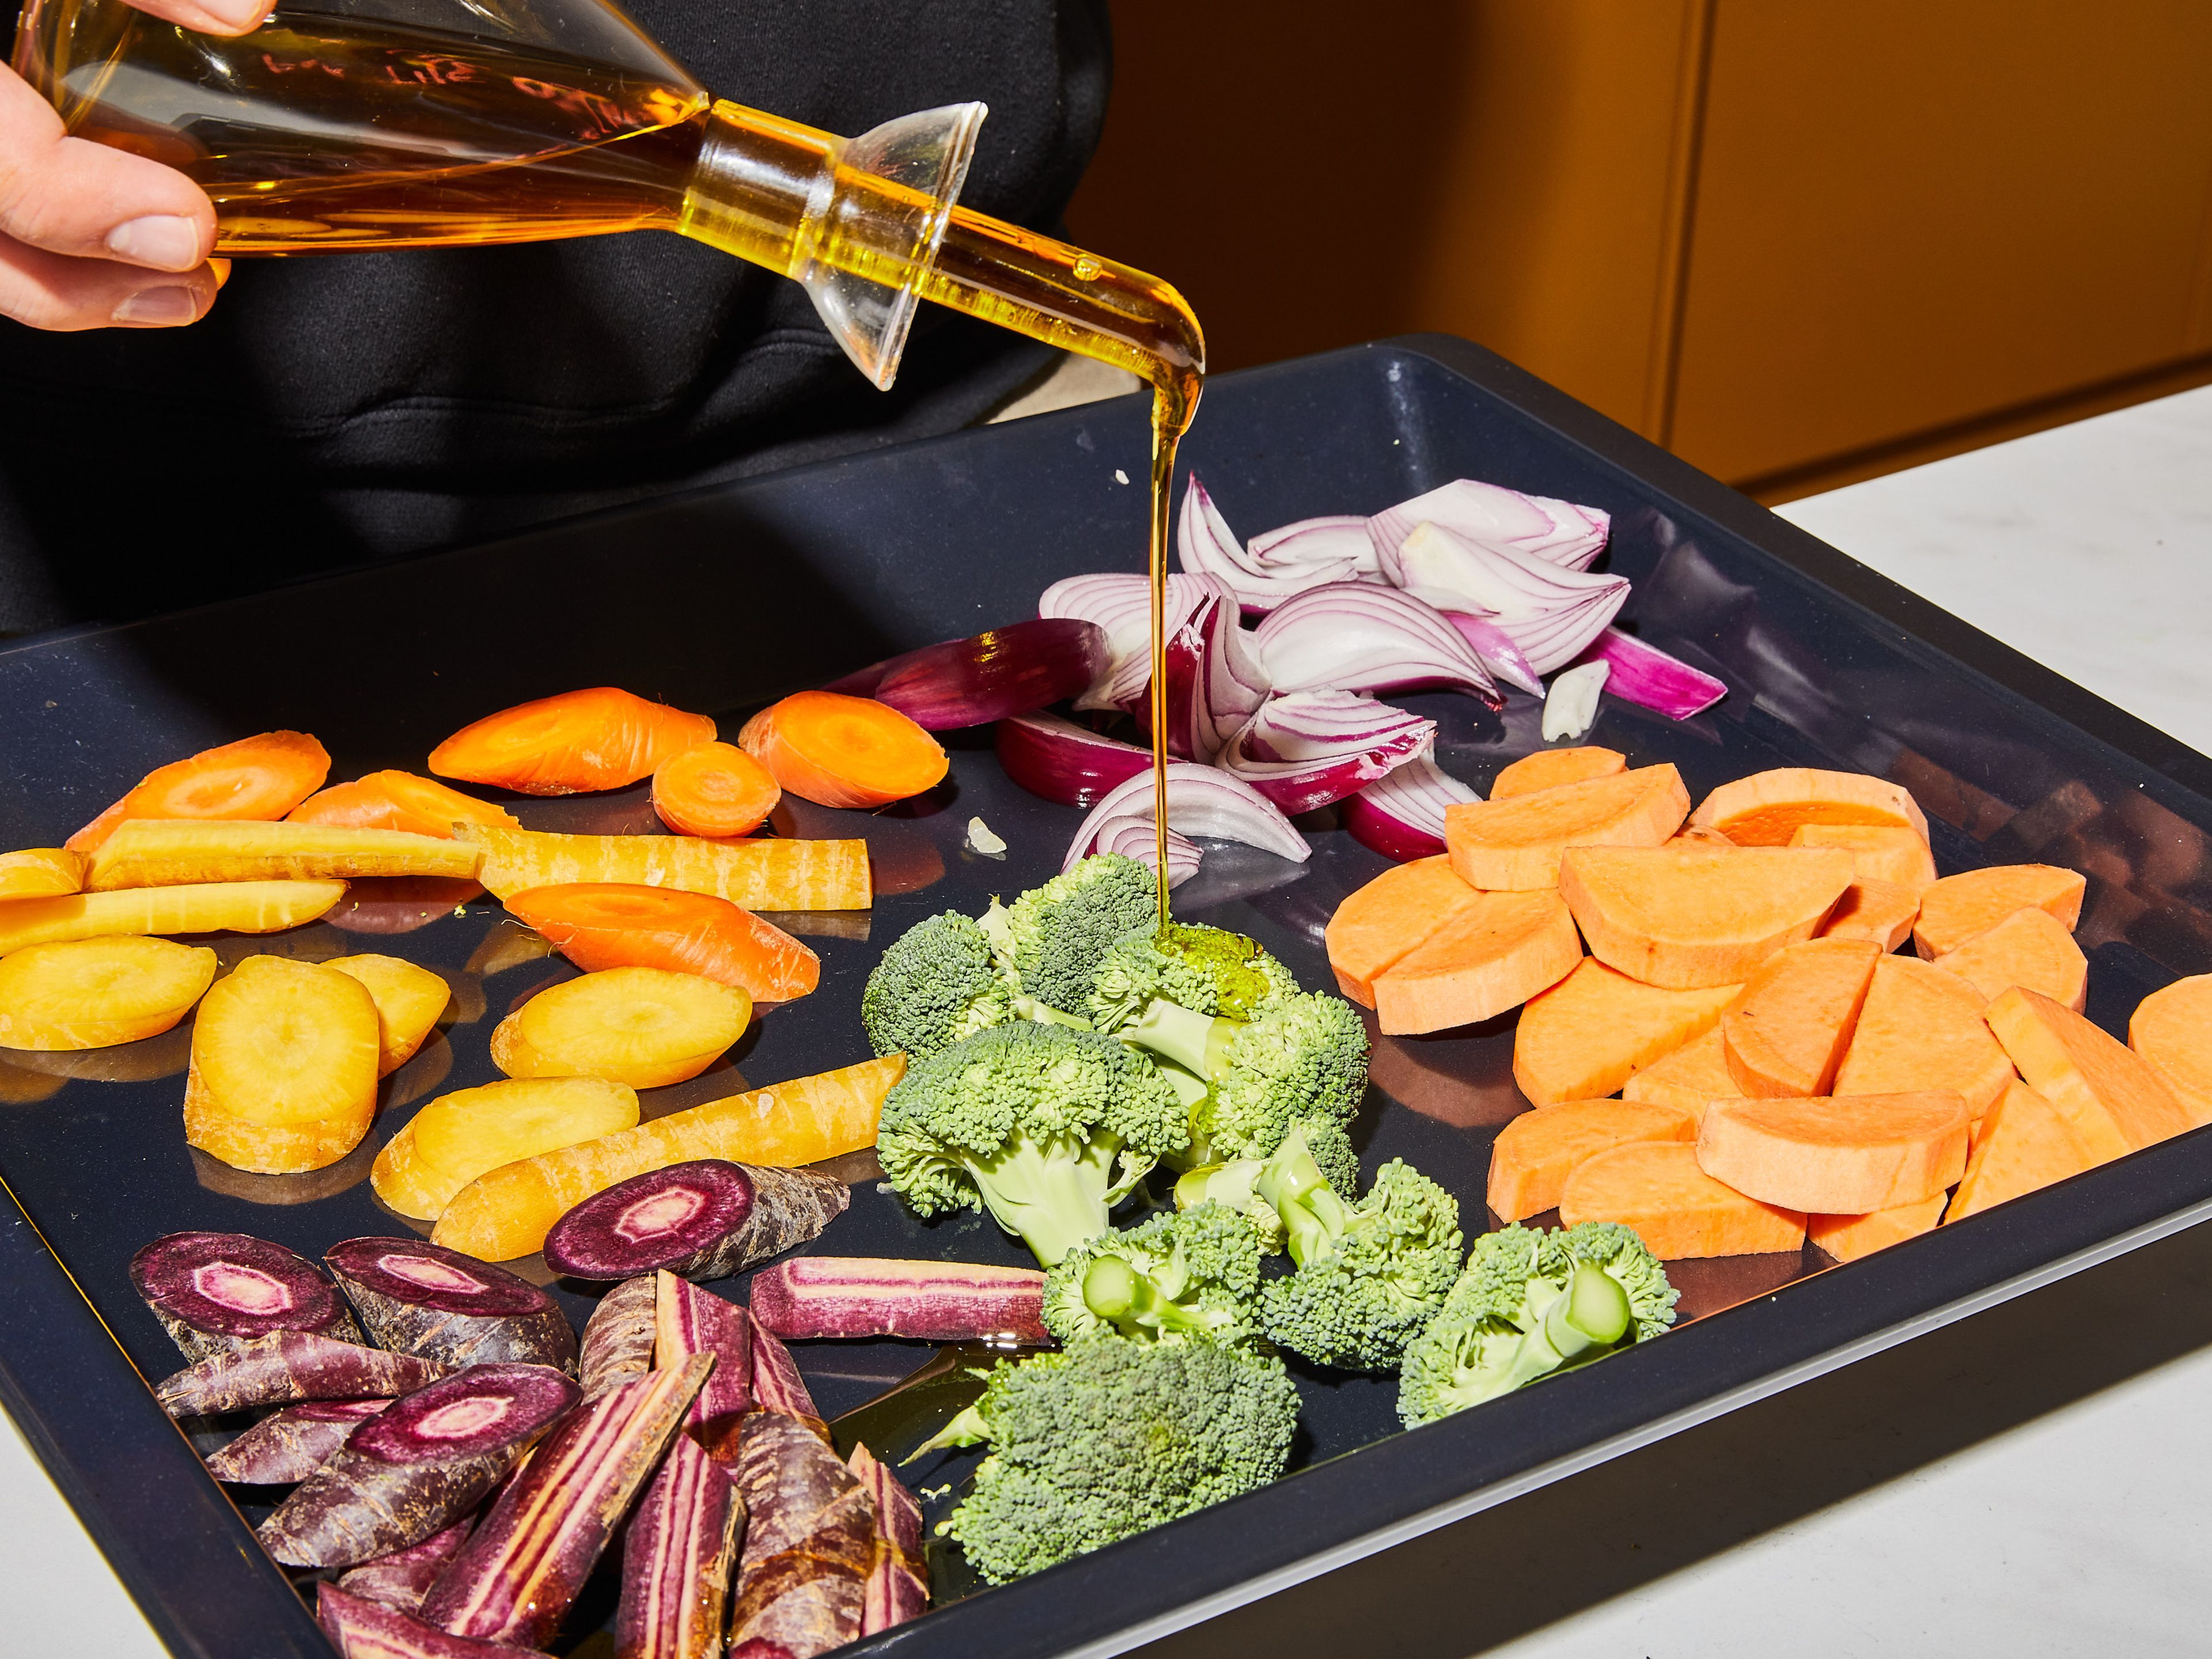 Gemüse würzen wie ein Profi: Mit diesen Tipps werden Ofen-Veggies zum Hit!